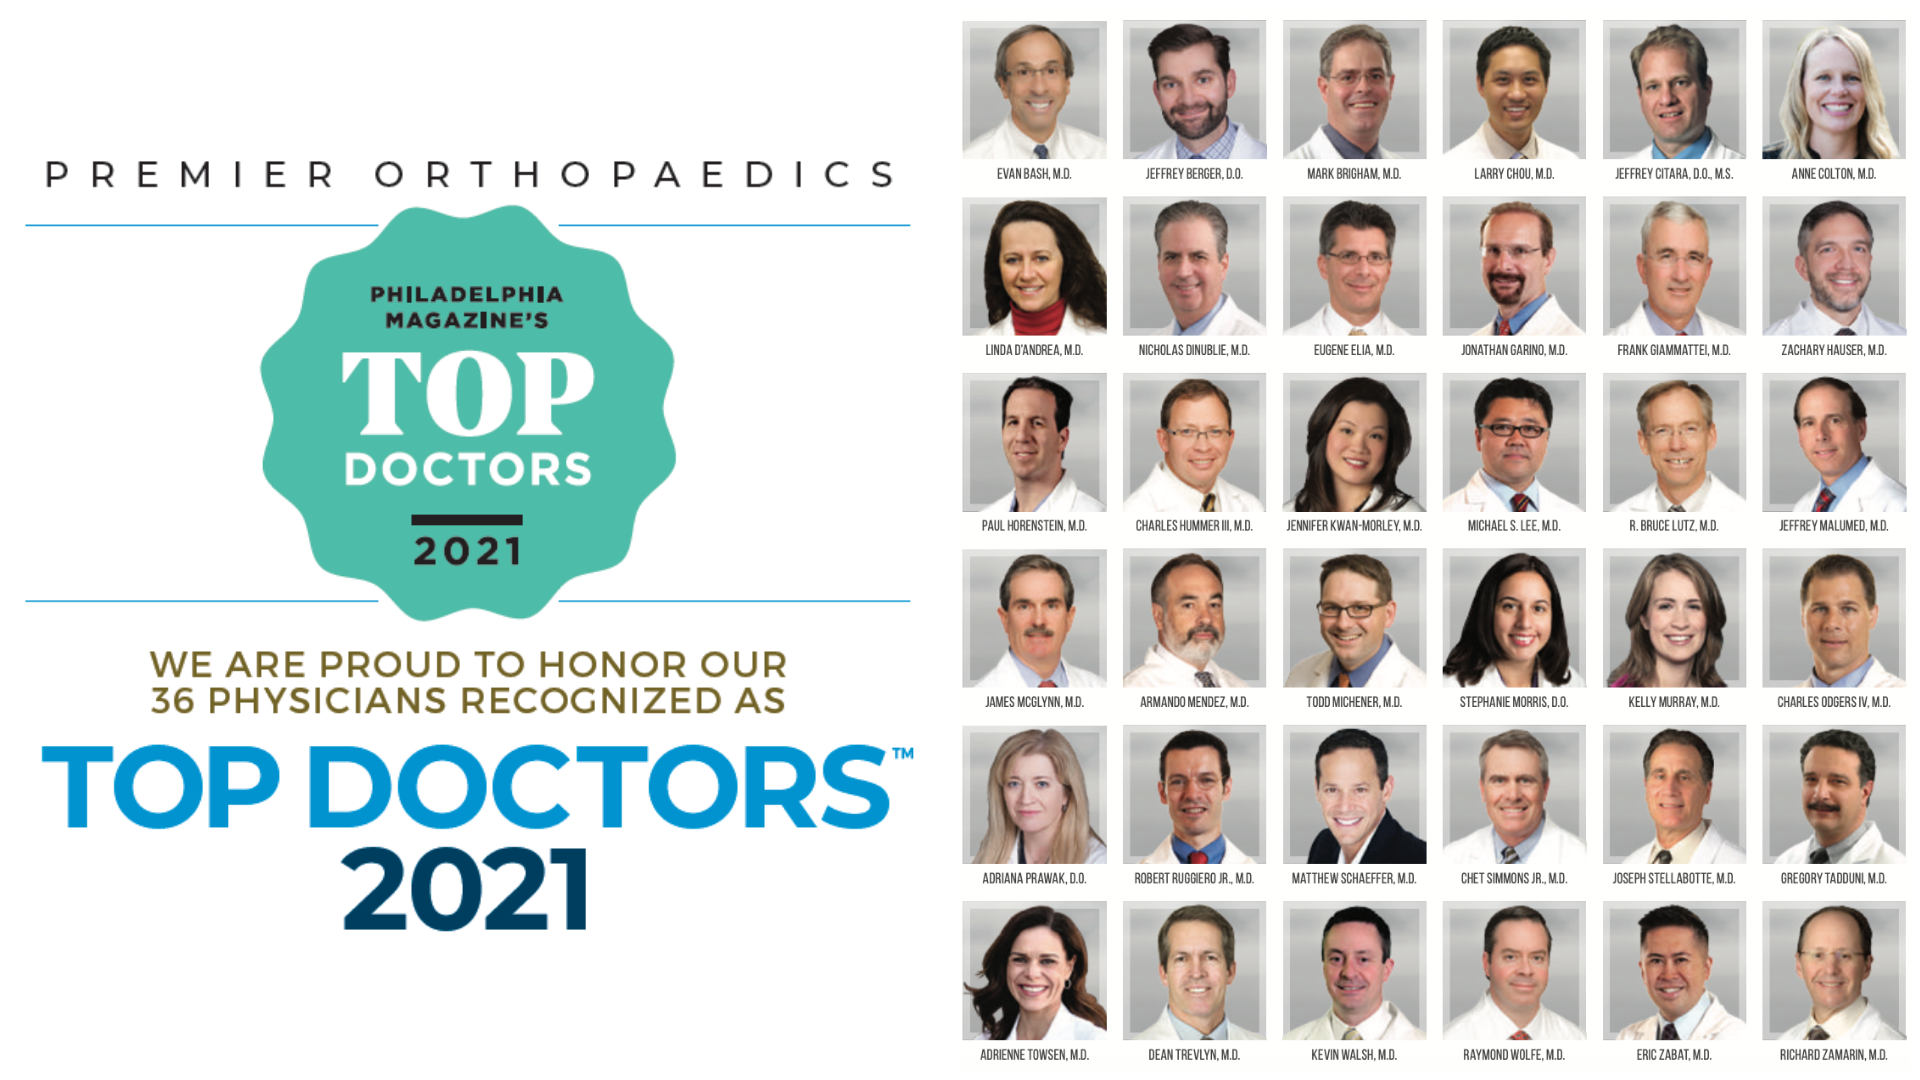 Philadelphia Magazine’s Top Doctors™ 2021 – Premier Orthopaedics